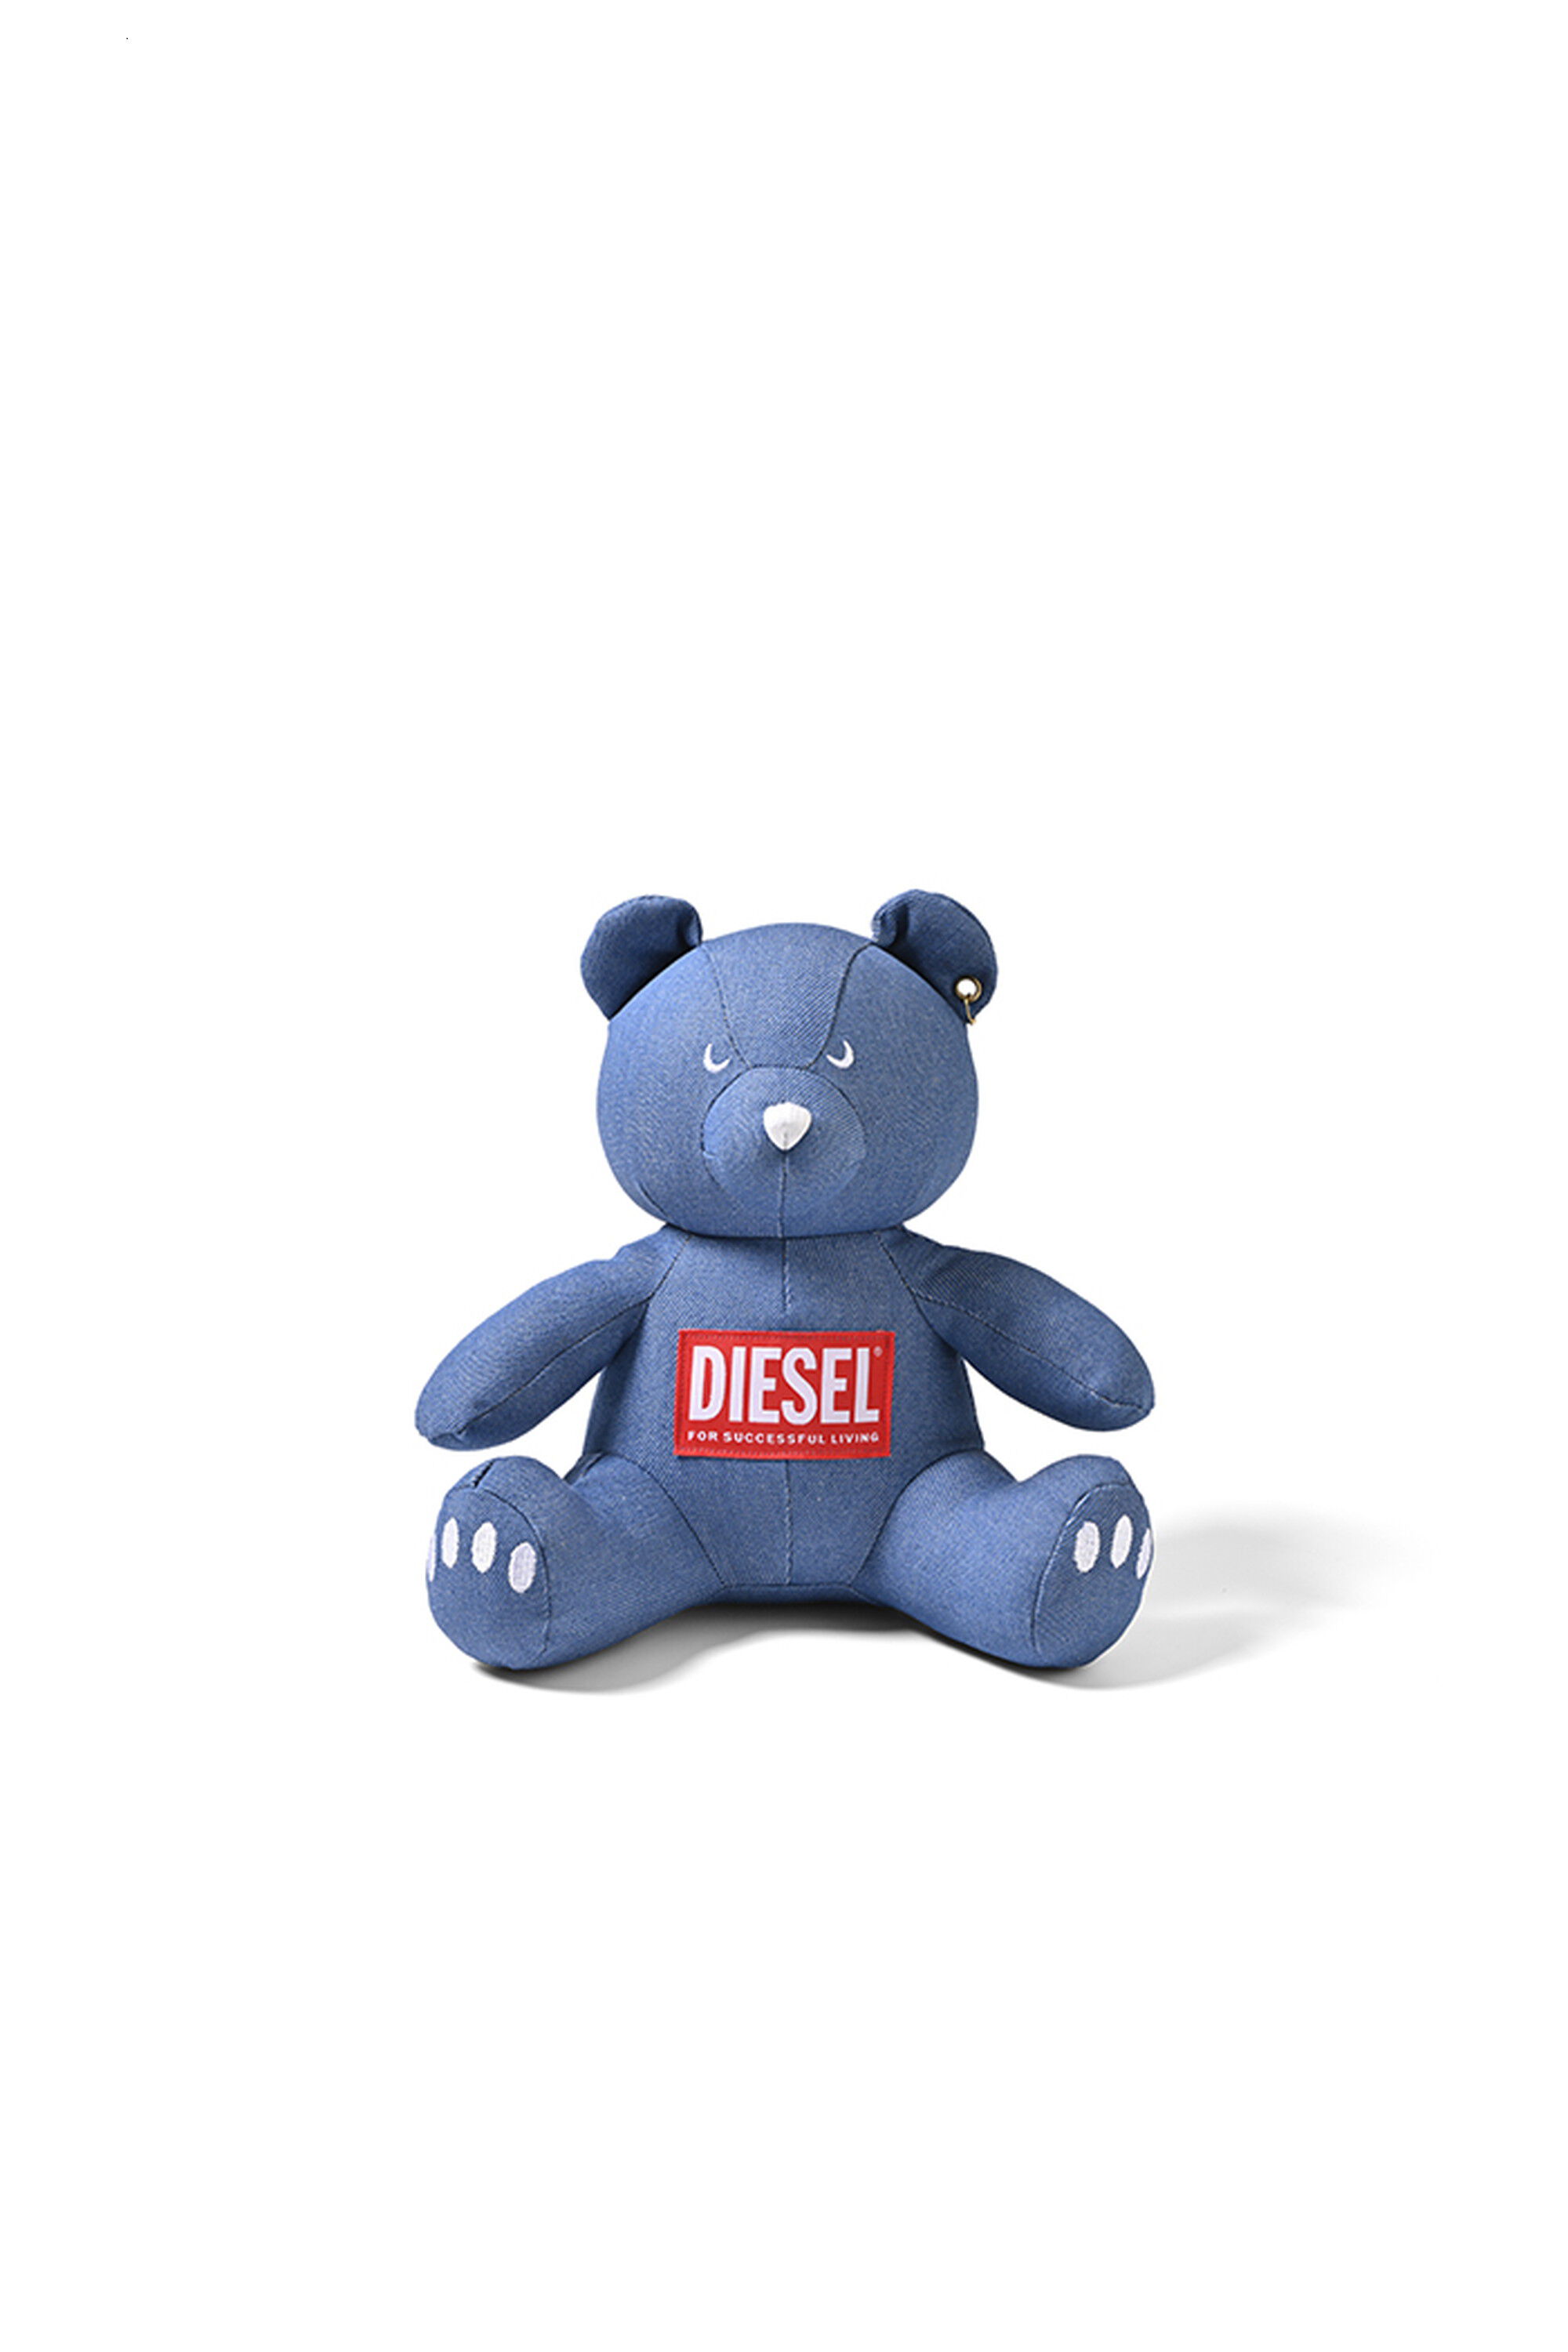 Diesel - DIESEL BEAR (LIGHT BLUE), ブルー - Image 1